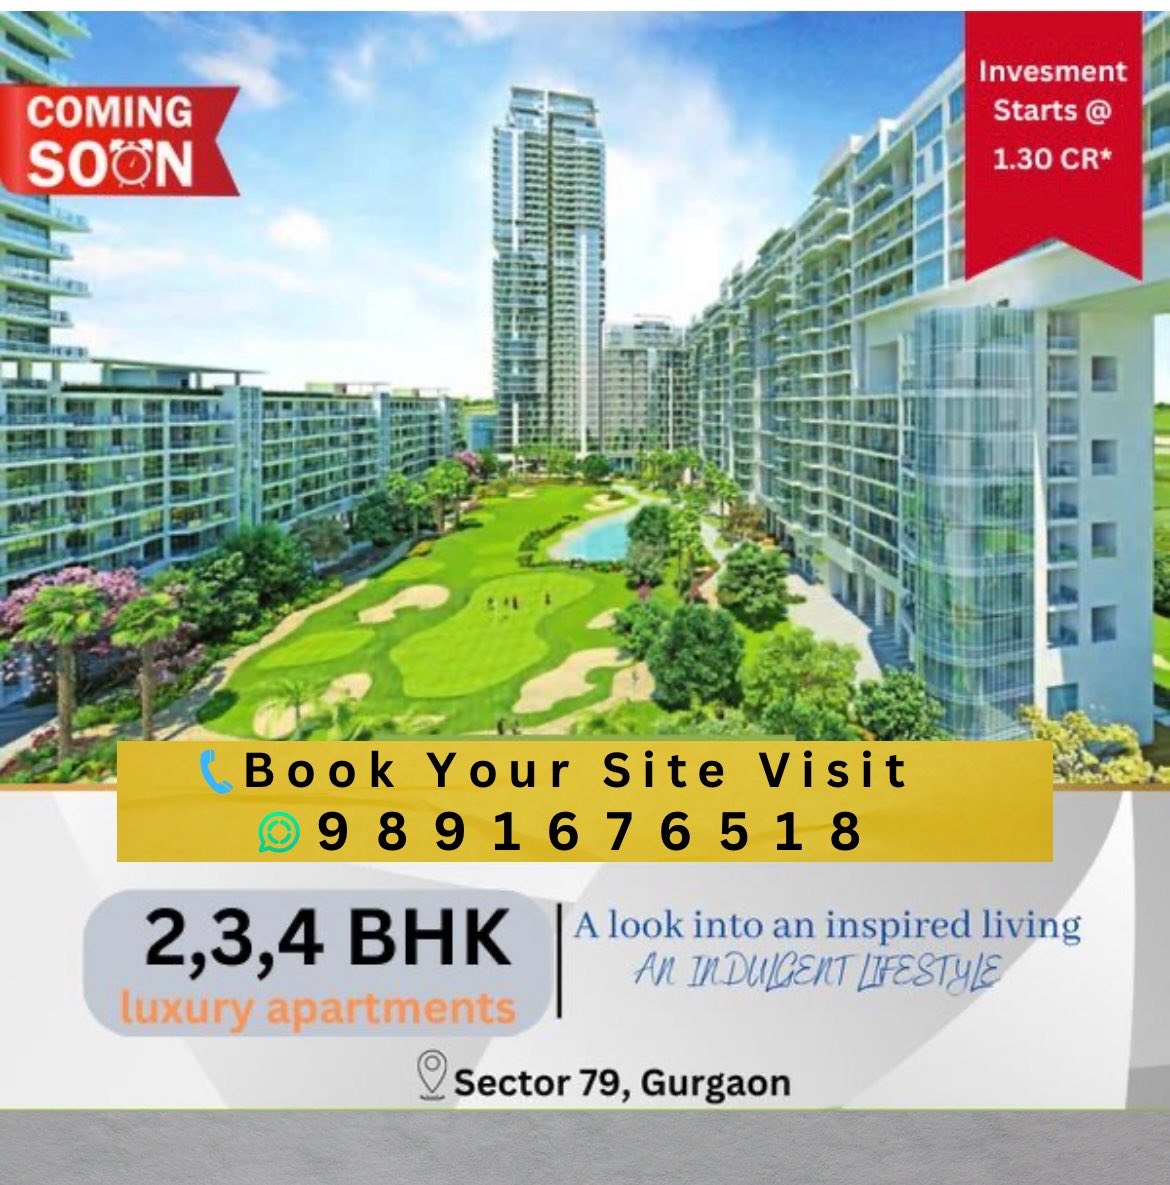 M3M Golf Estate Phase 2 is a future premium residential development launched by M3M India at Sector 79 

#delhigirls #delhiblogger #delhidiaries #delhimetro #delhifashionblogger #delhicapitals #delhiproperty #delhiinvestors #amzingproperty #broker #propertybroker